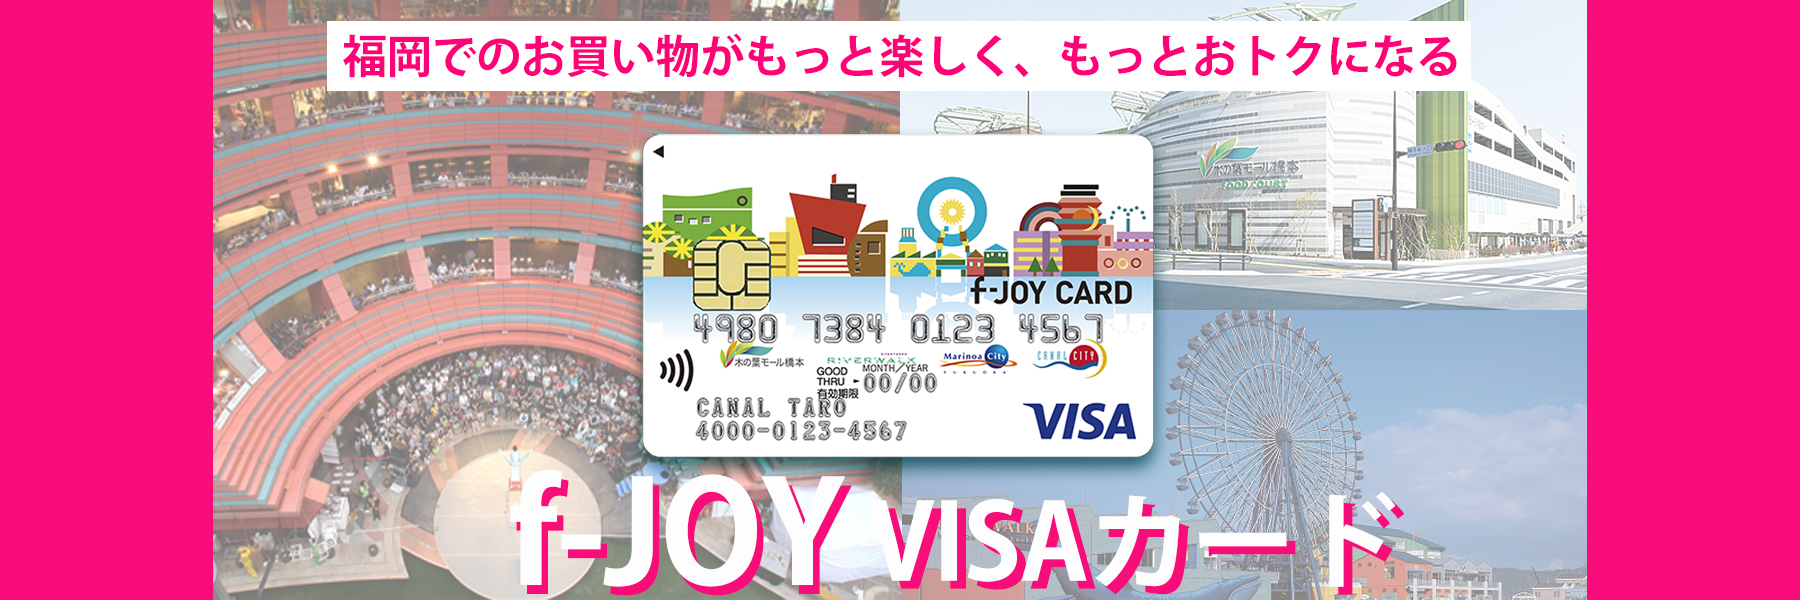 f-JOY VISAカード